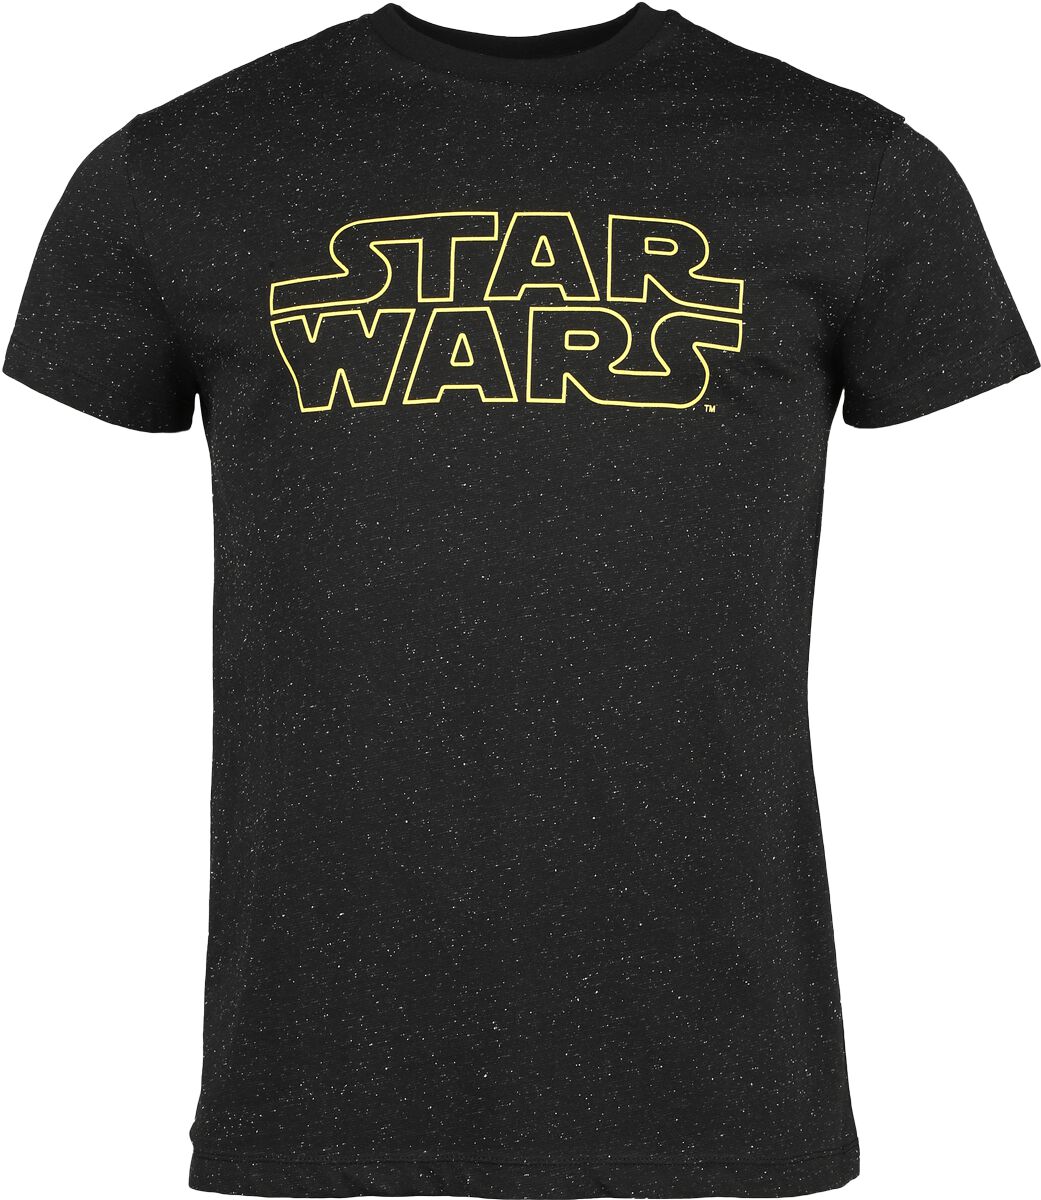 Star Wars Star Wars - Galaxy T-Shirt schwarz in XXL